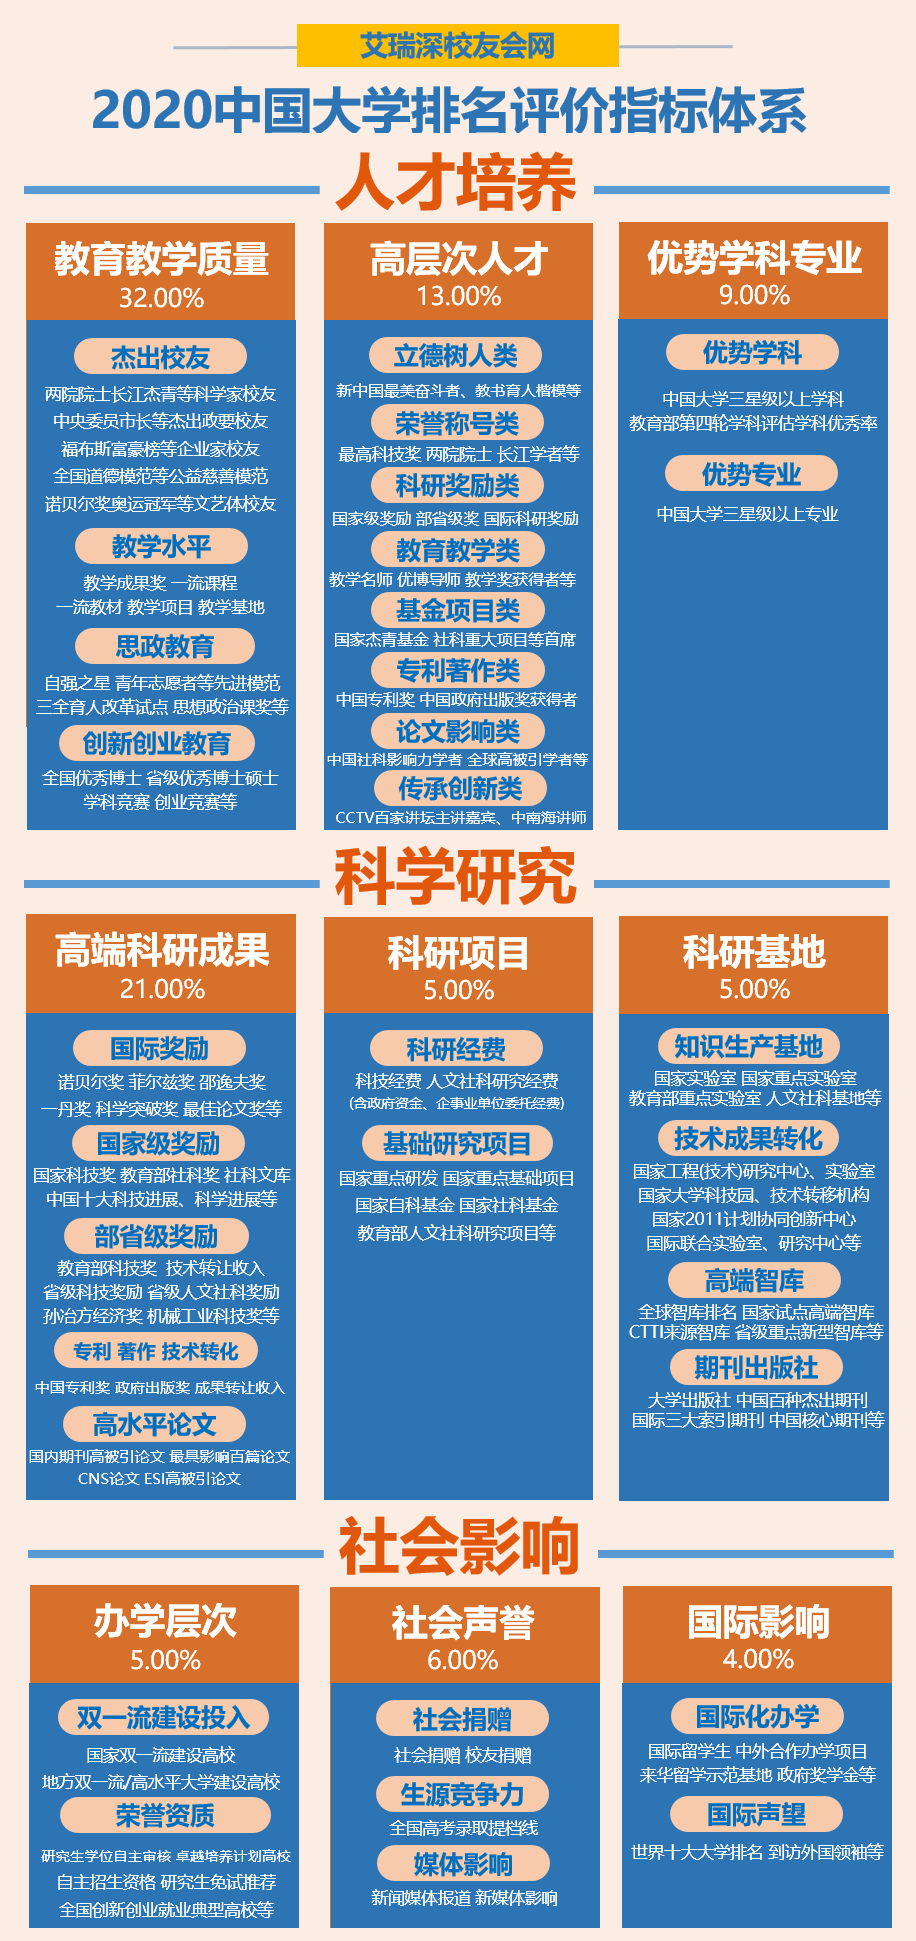 211大学名单2020年排名_2020中国211工程大学排名公布,南京大学雄居前五